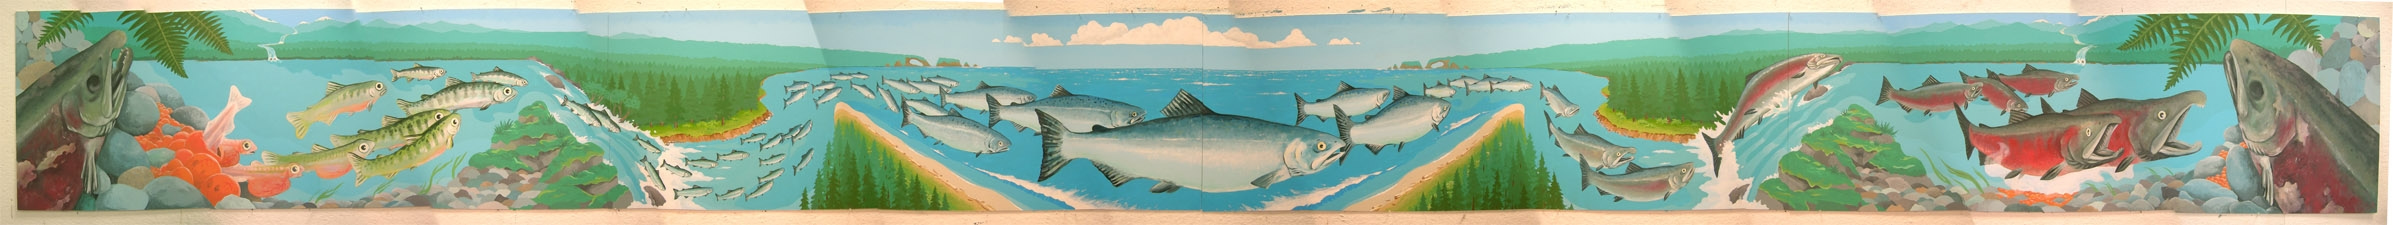 Salmon Mural 